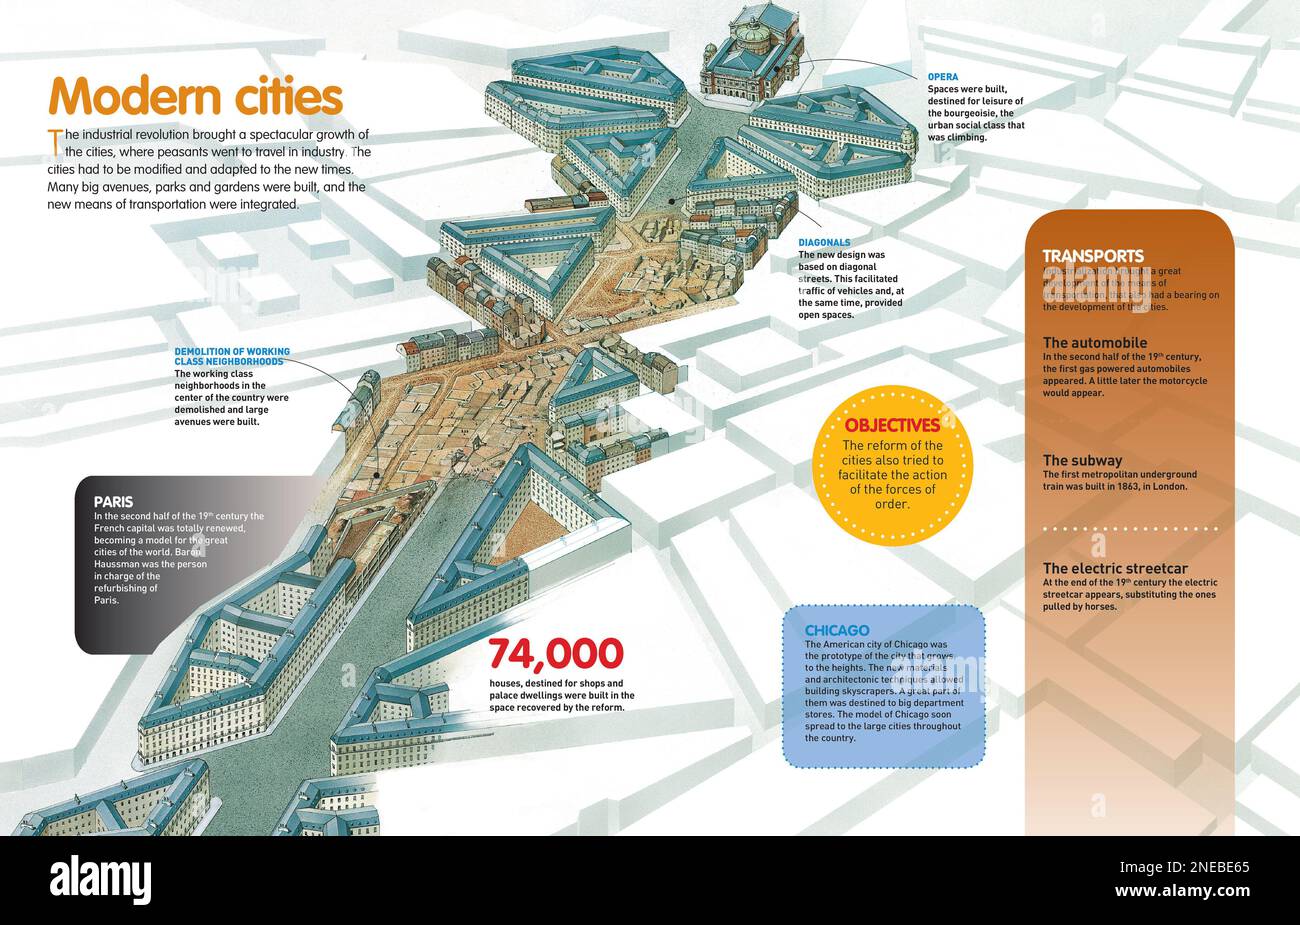 Infografik über das Wachstum und die städtischen Projekte der Großstädte nach der Industriellen Revolution, mit Details über die Renovierung von Paris in der zweiten Hälfte des 19. Jahrhunderts. [QuarkXPress (.qxp); Adobe InDesign (.indd); QuarkXPress (.qxd); 4960 x 3188]. Stockfoto